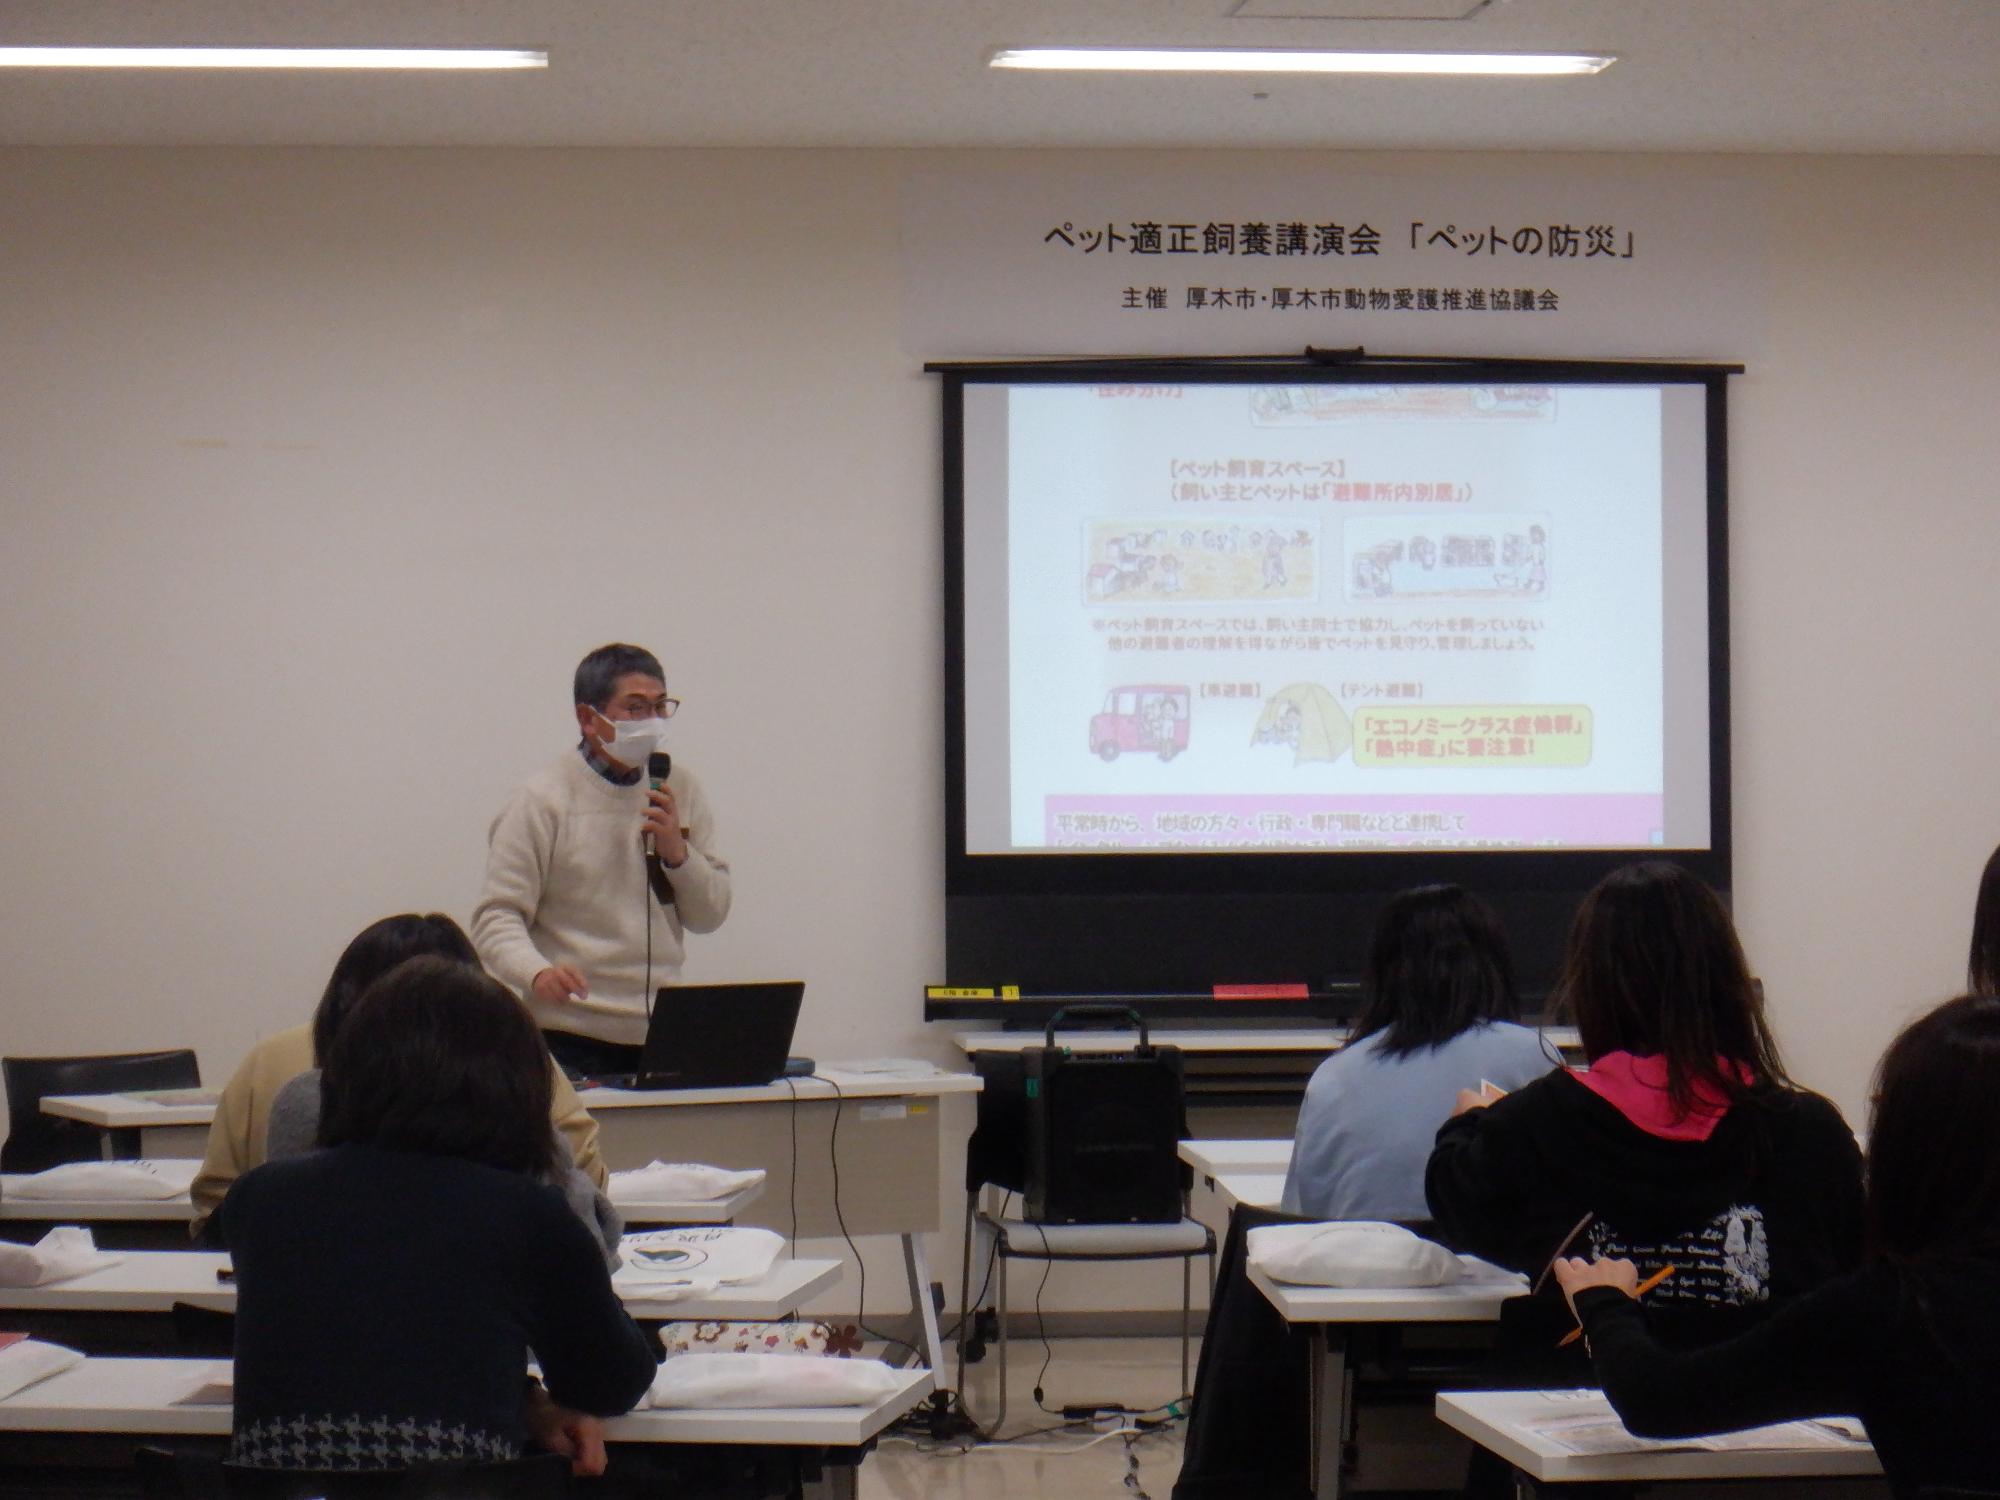 参加者の前でマイクを持って講演する倉島勝治先生の写真